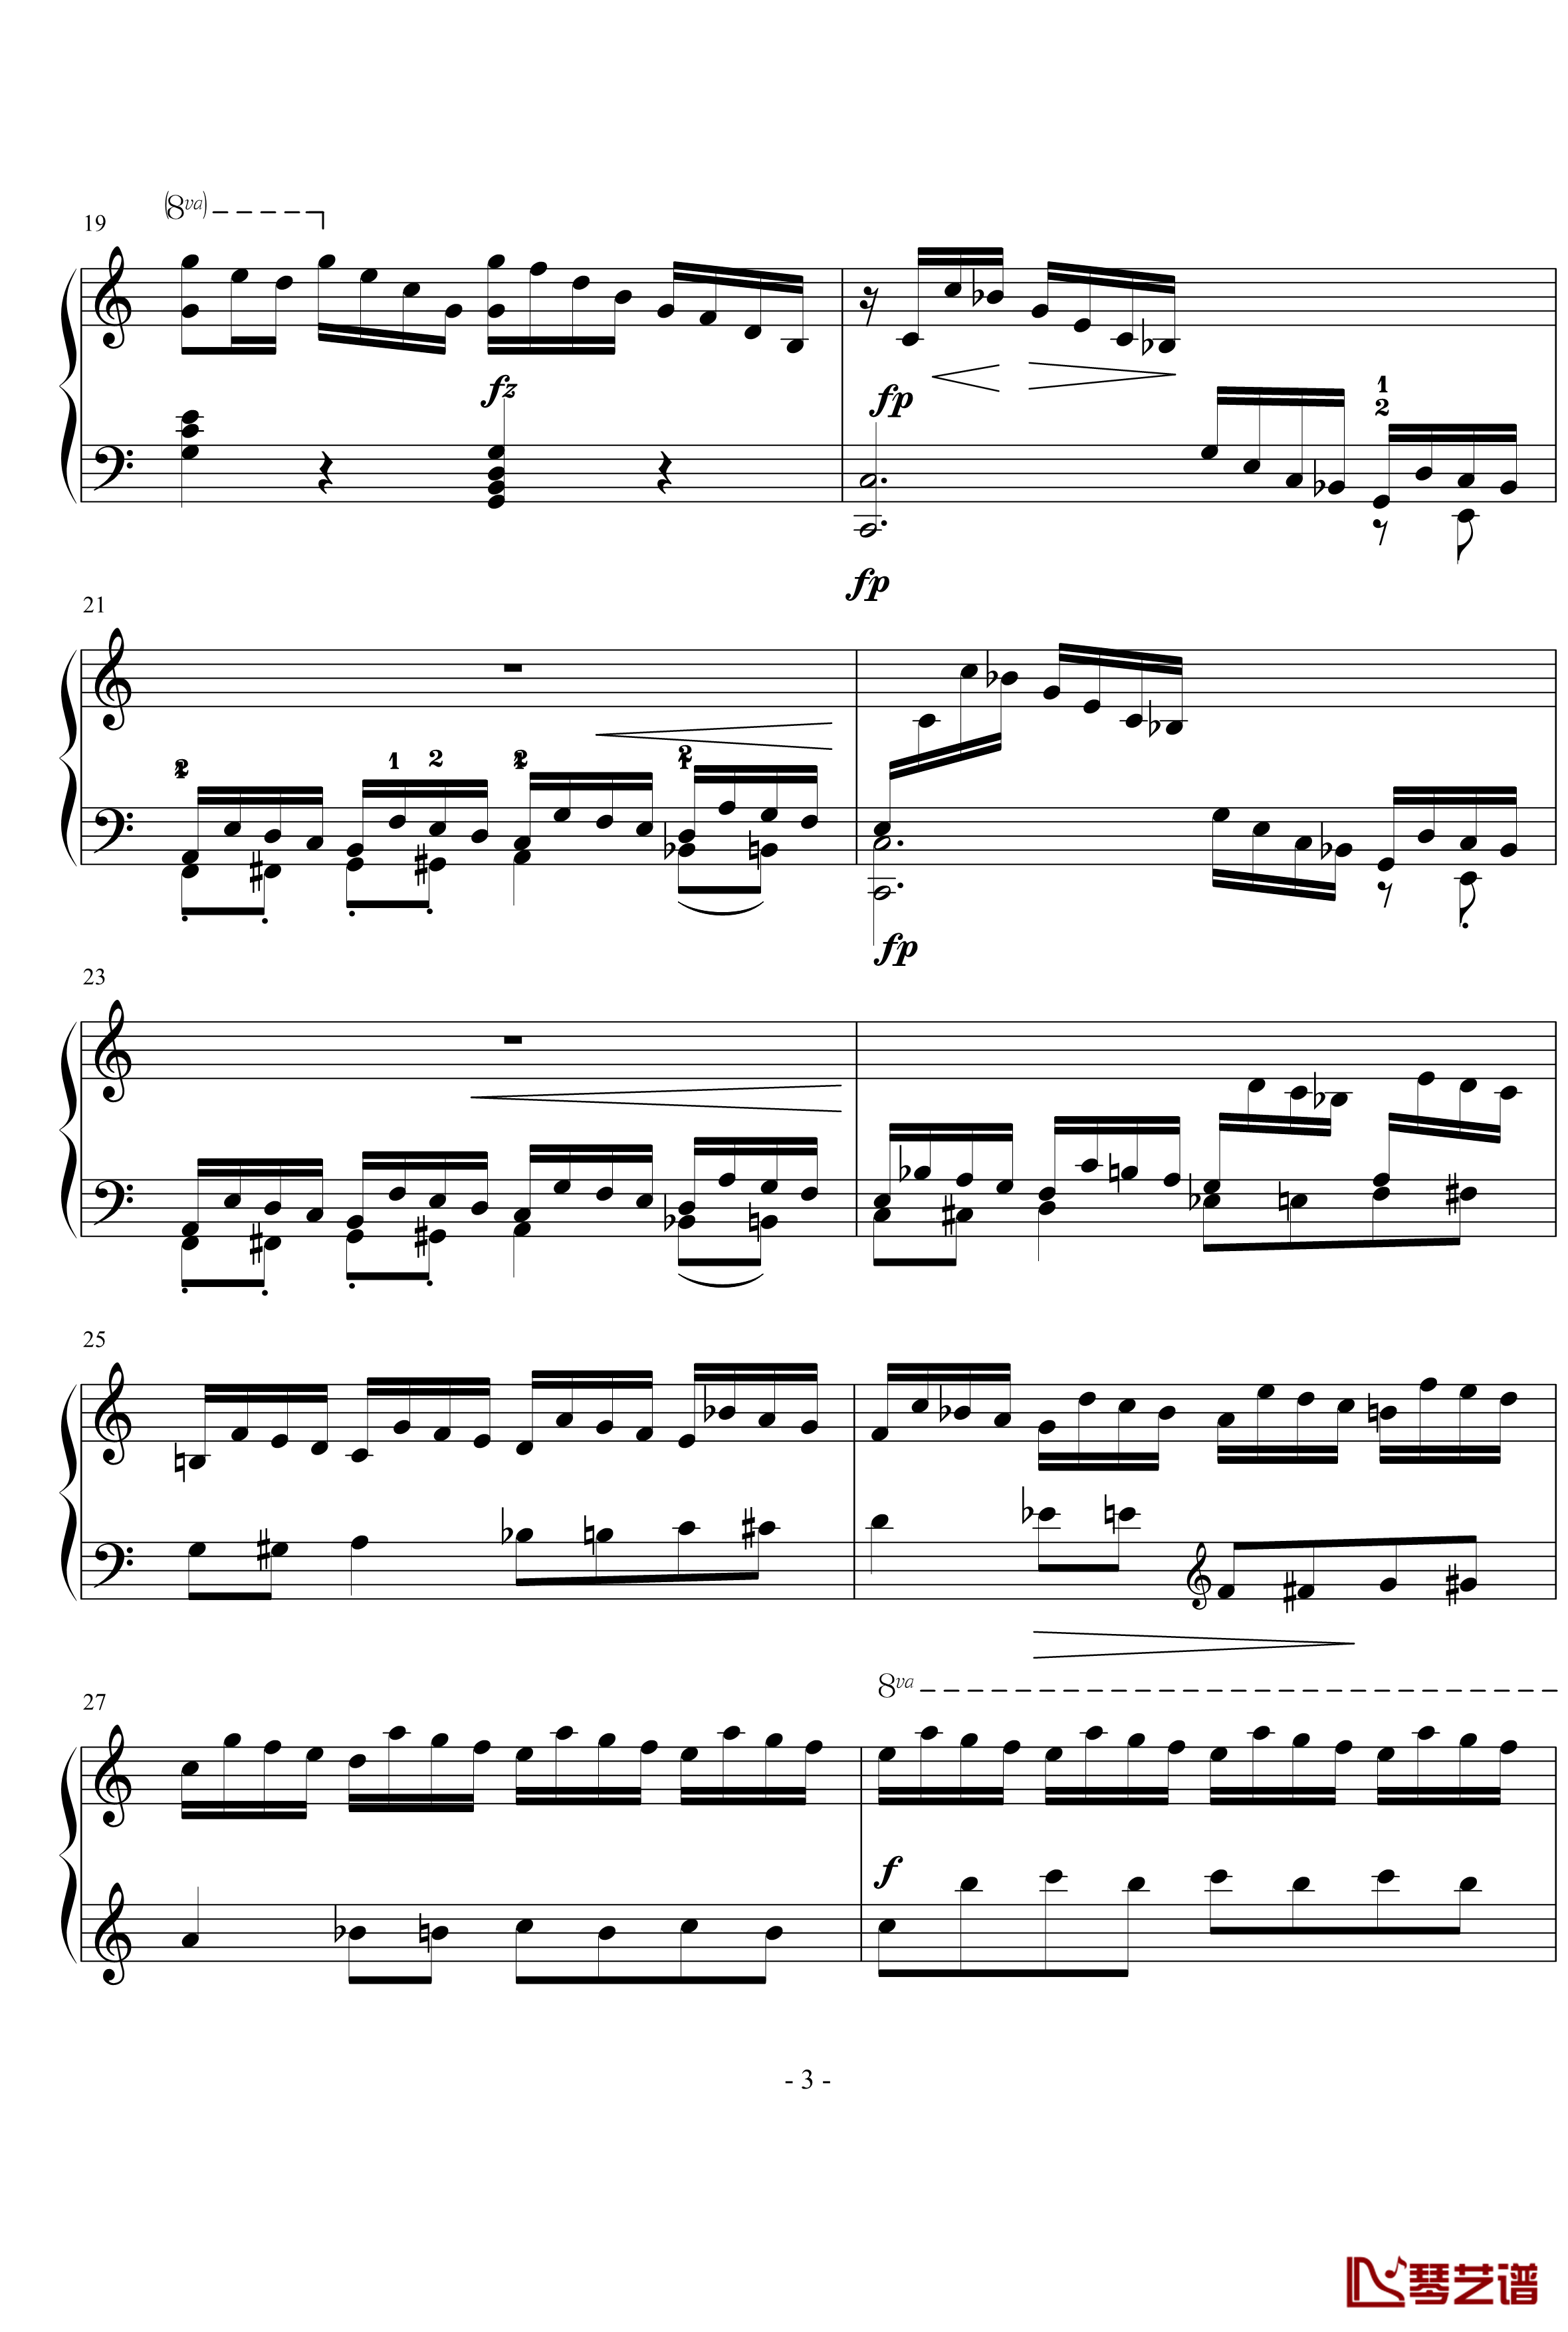 十二首练习形式的钢琴练习曲1钢琴谱-李斯特3